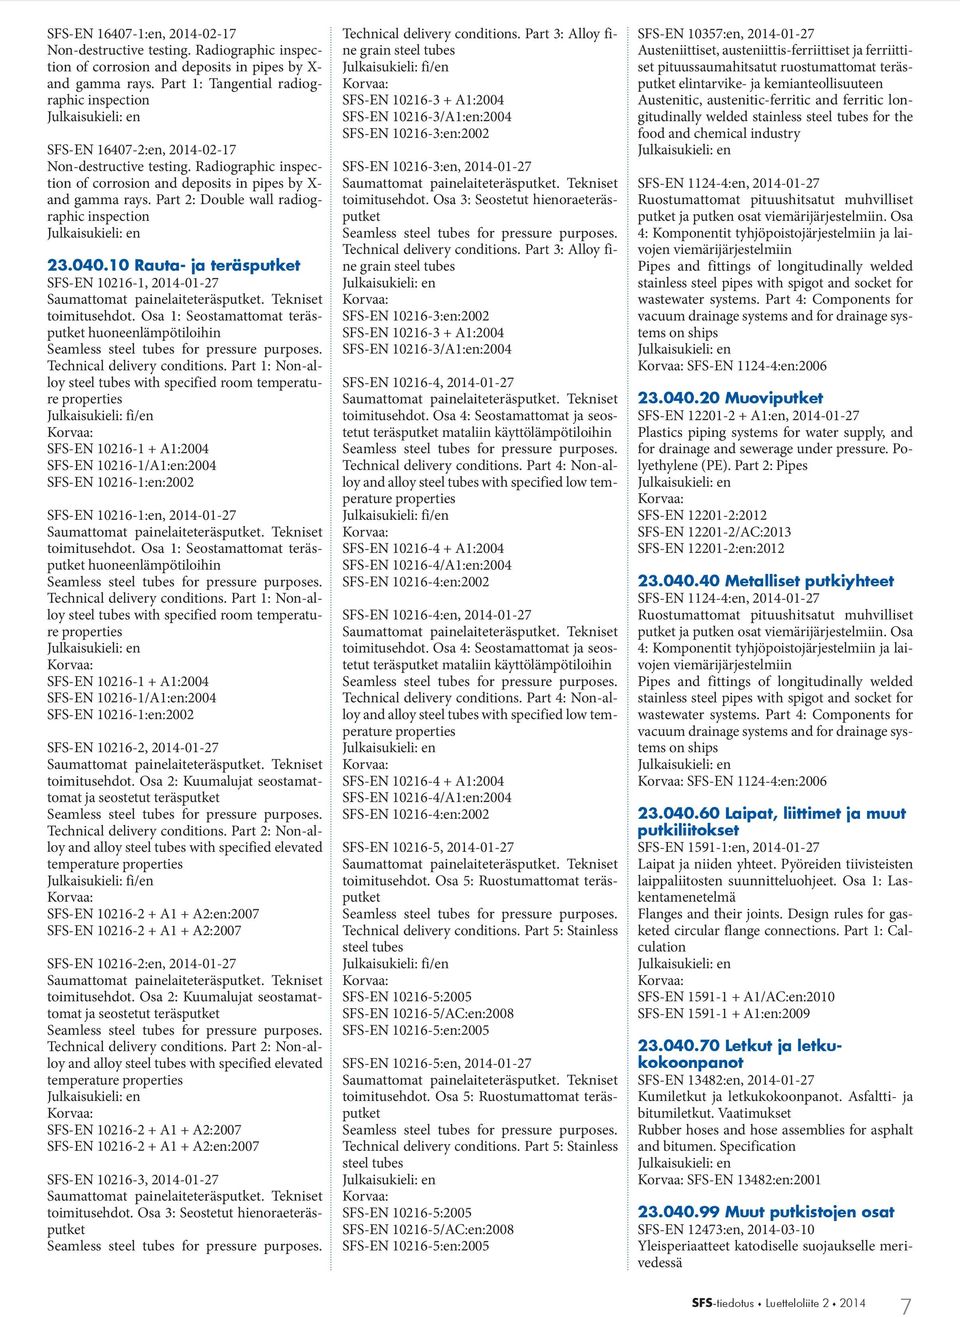 Part 2: Double wall radiographic inspection 23.040.10 Rauta- ja teräsputket SFS-EN 10216-1, 2014-01-27 toimitusehdot.